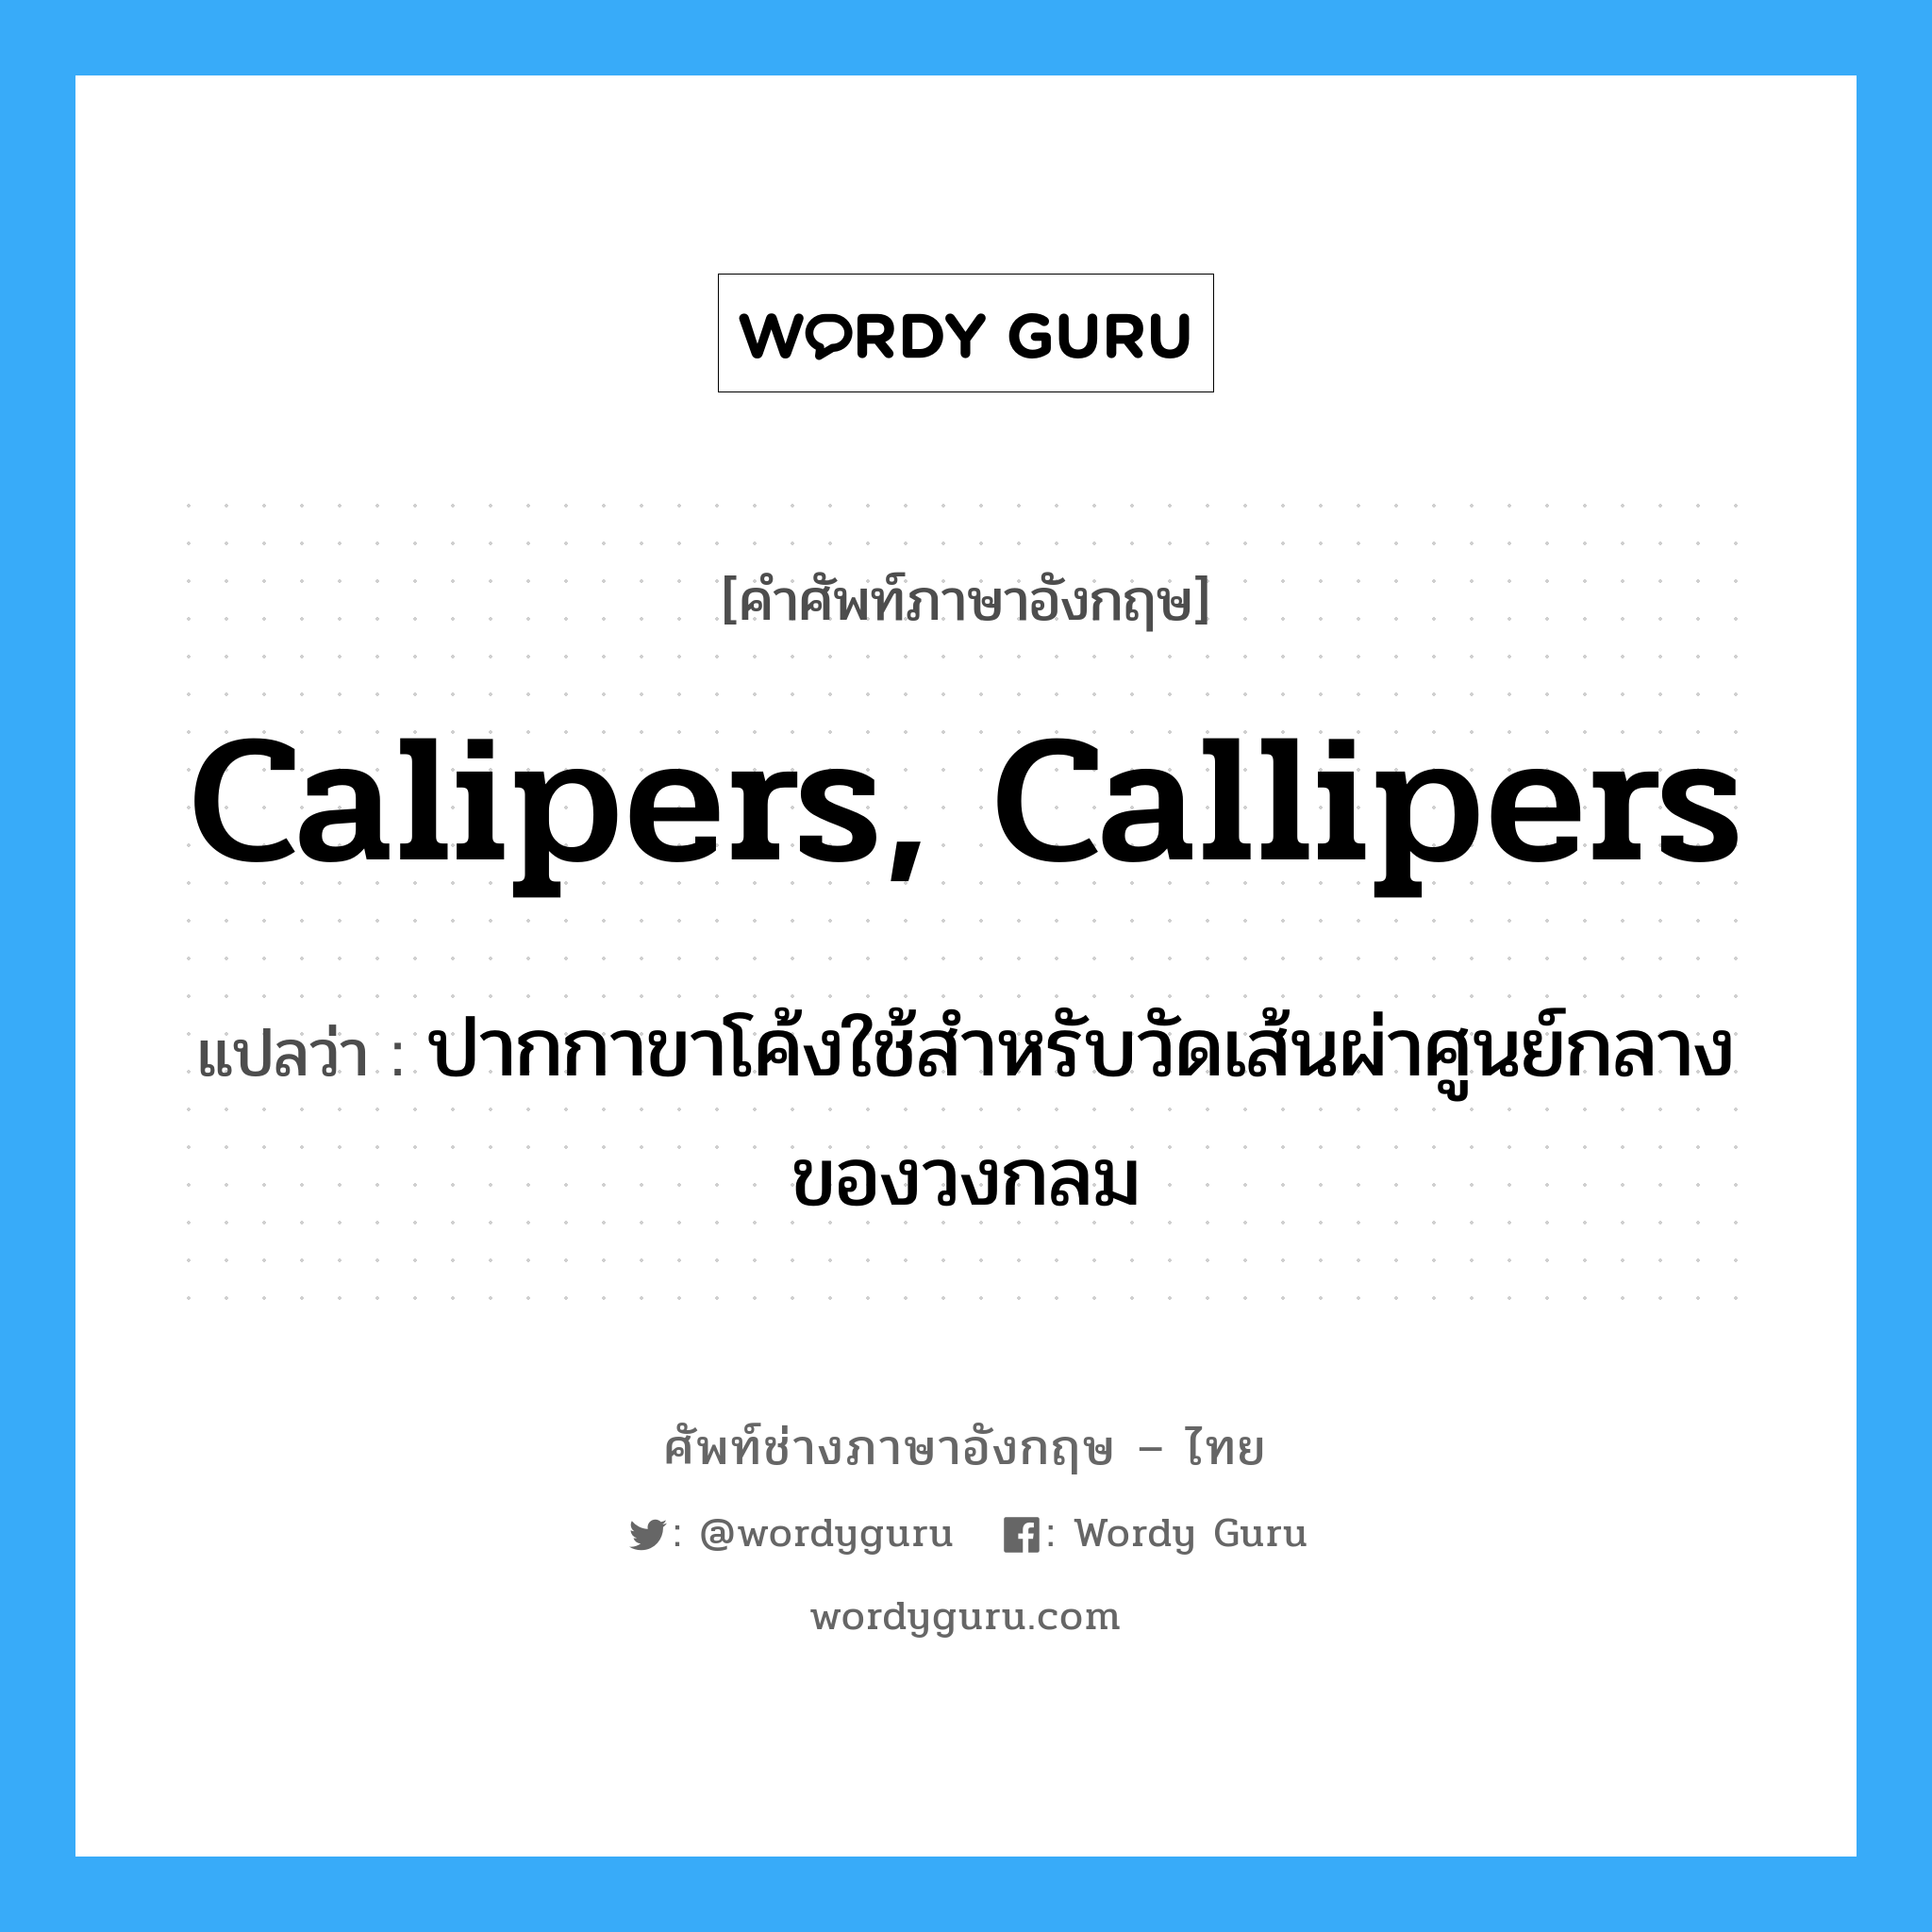 calipers, callipers แปลว่า?, คำศัพท์ช่างภาษาอังกฤษ - ไทย calipers, callipers คำศัพท์ภาษาอังกฤษ calipers, callipers แปลว่า ปากกาขาโค้งใช้สำหรับวัดเส้นผ่าศูนย์กลางของวงกลม